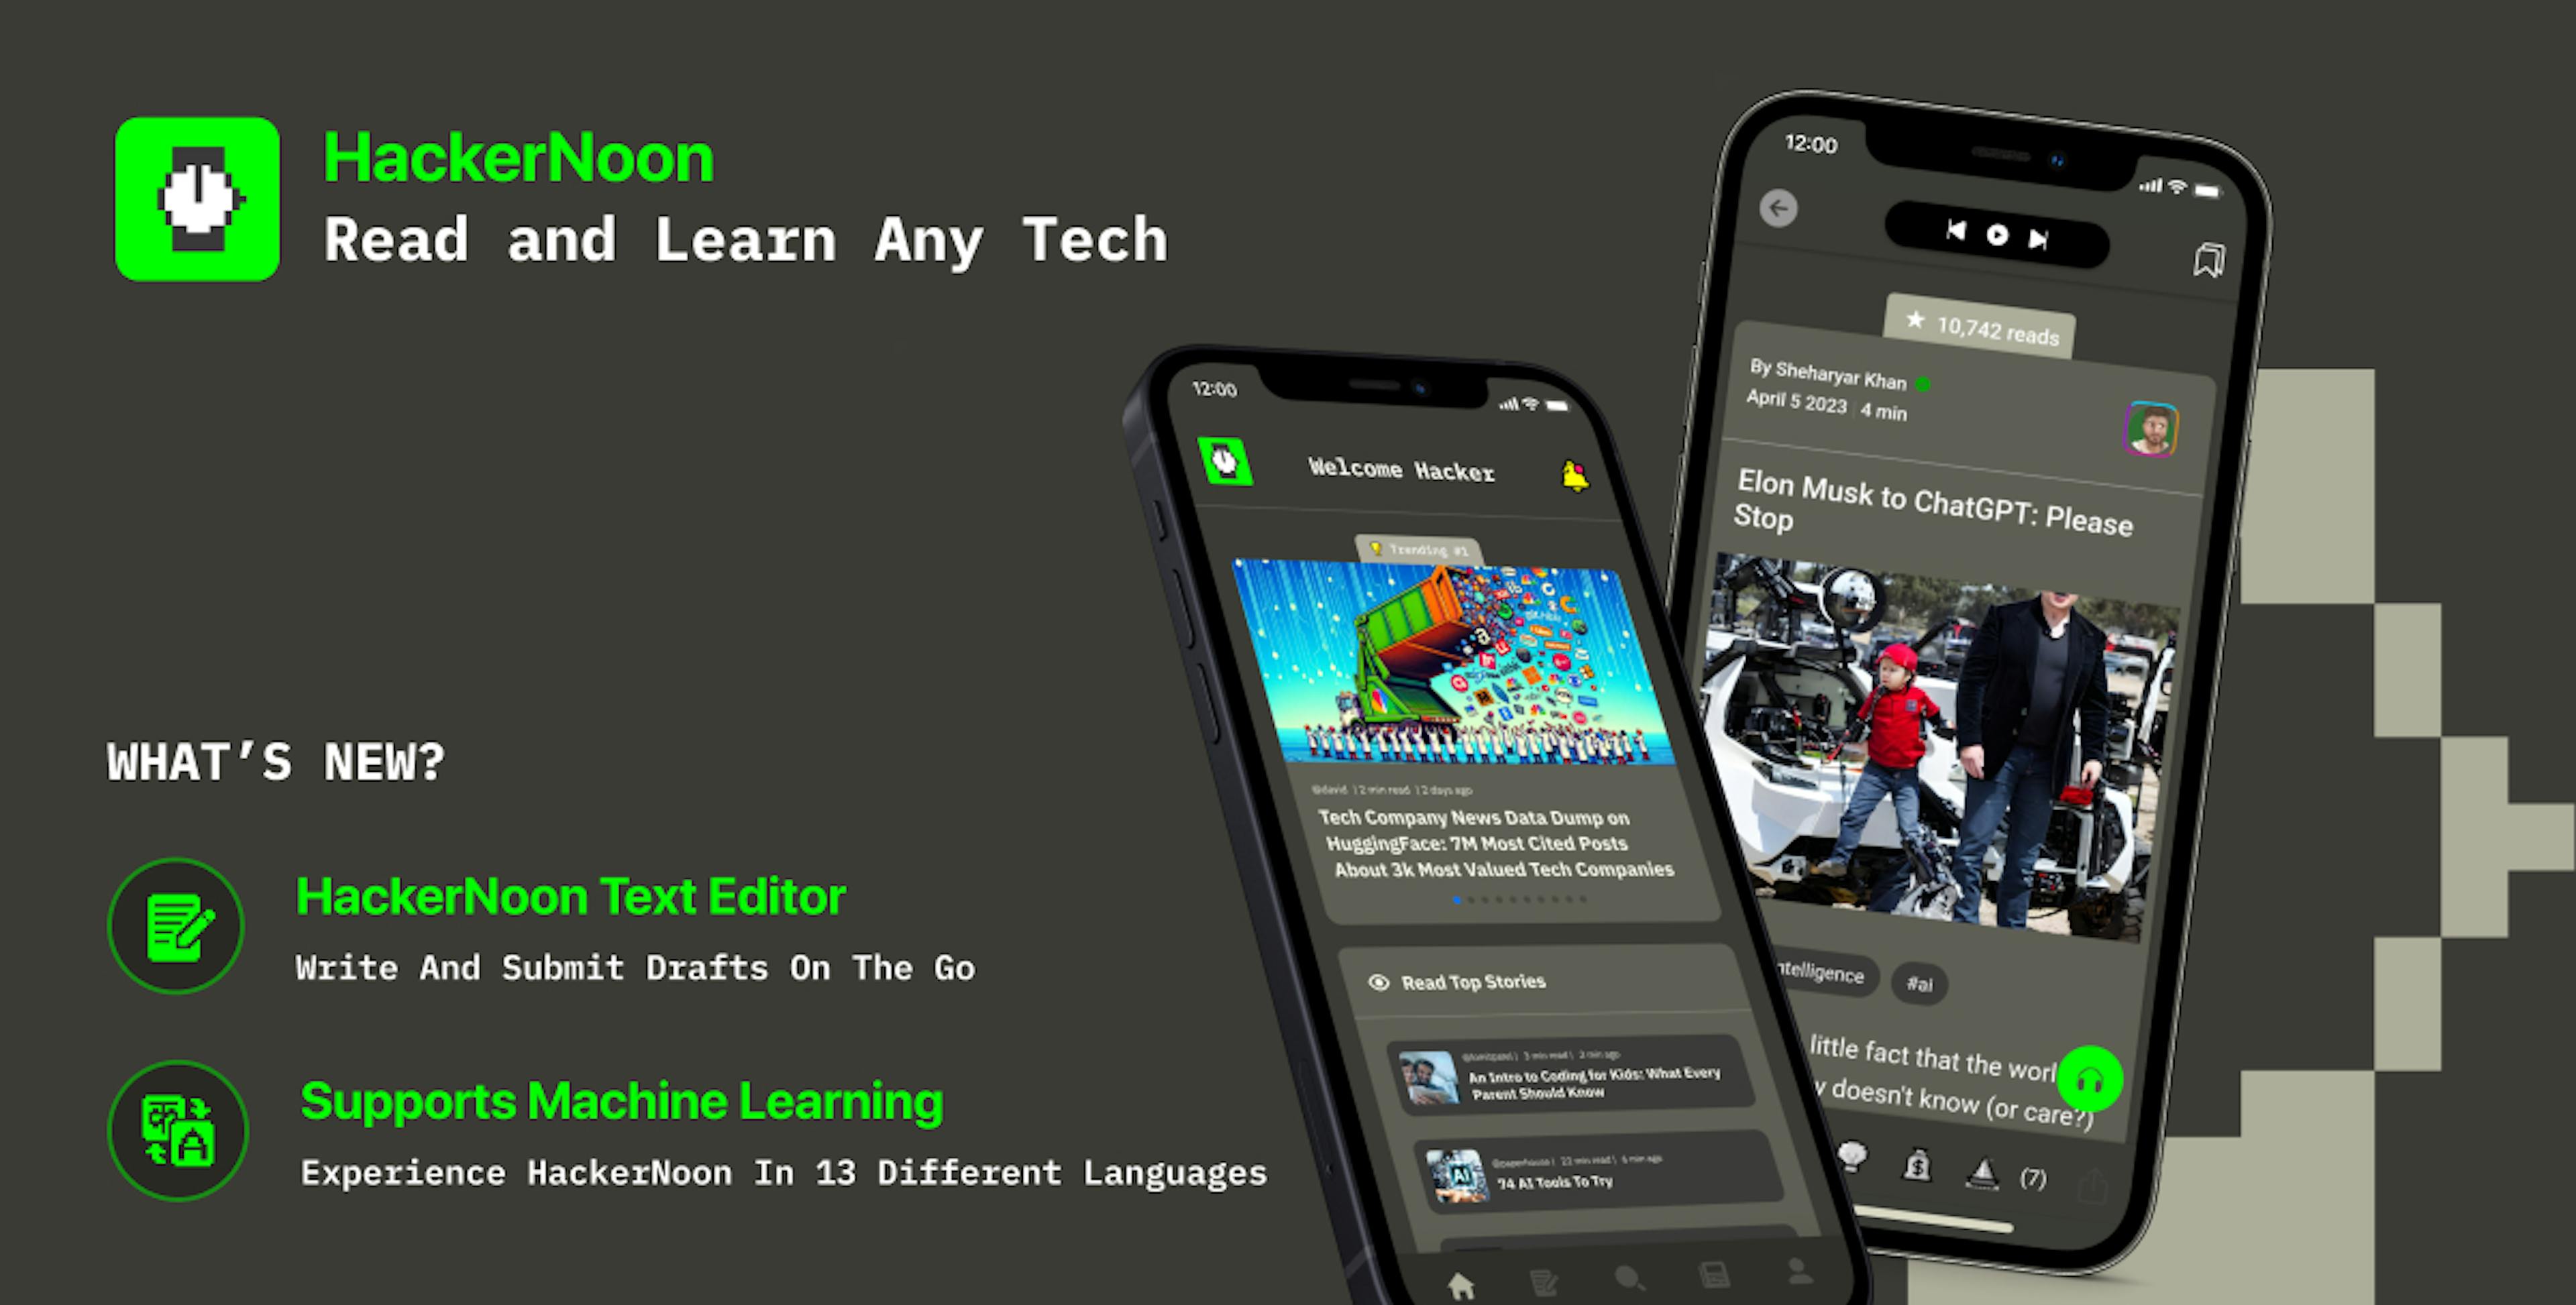 featured image - O aplicativo móvel HackerNoon agora suporta escrita no aplicativo e 13 idiomas no total para ler blogs de tecnologia